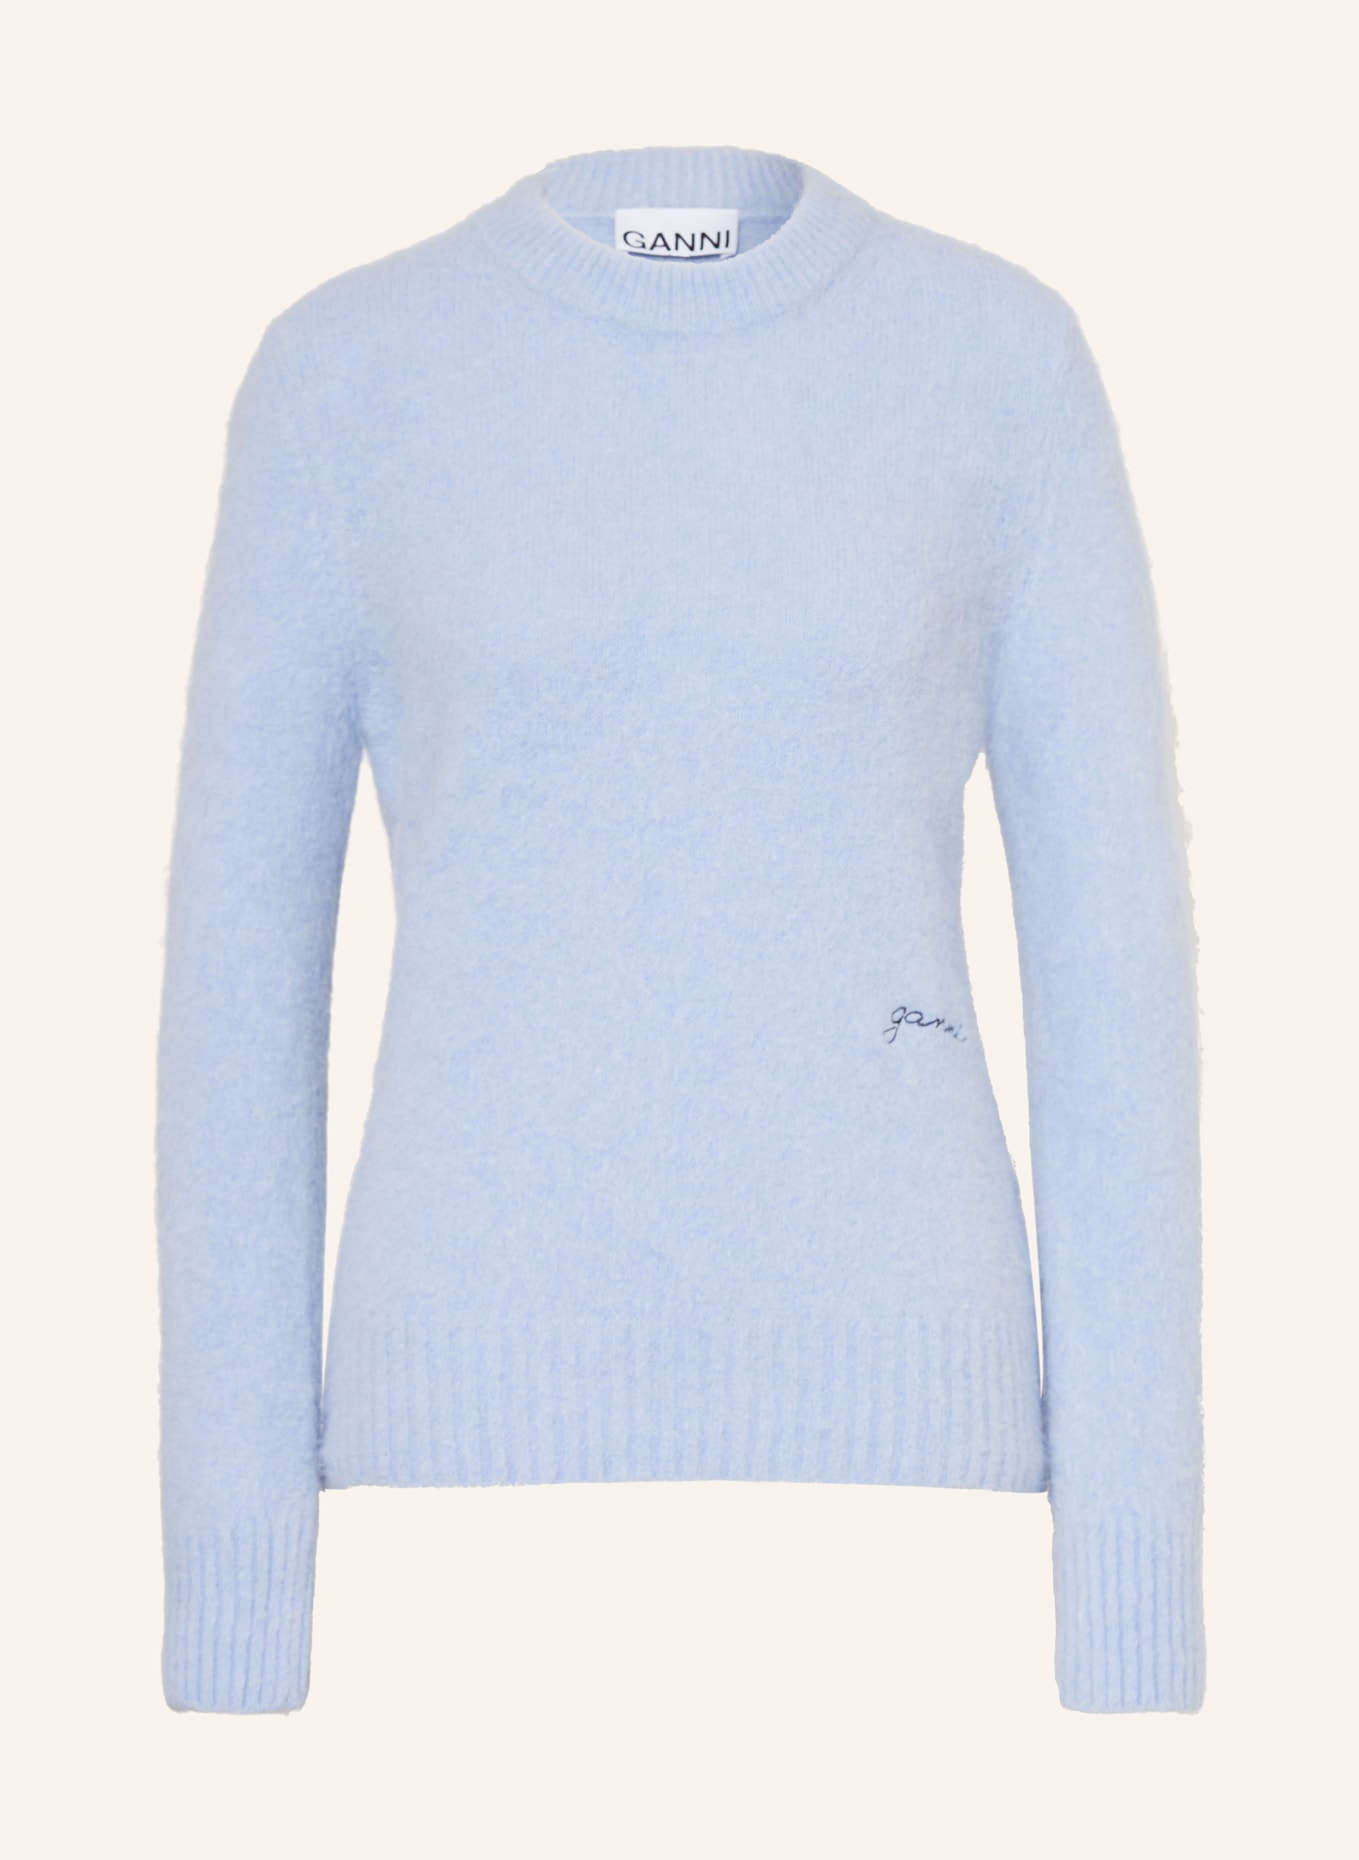 GANNI Sweater with alpaca, Color: LIGHT BLUE (Image 1)